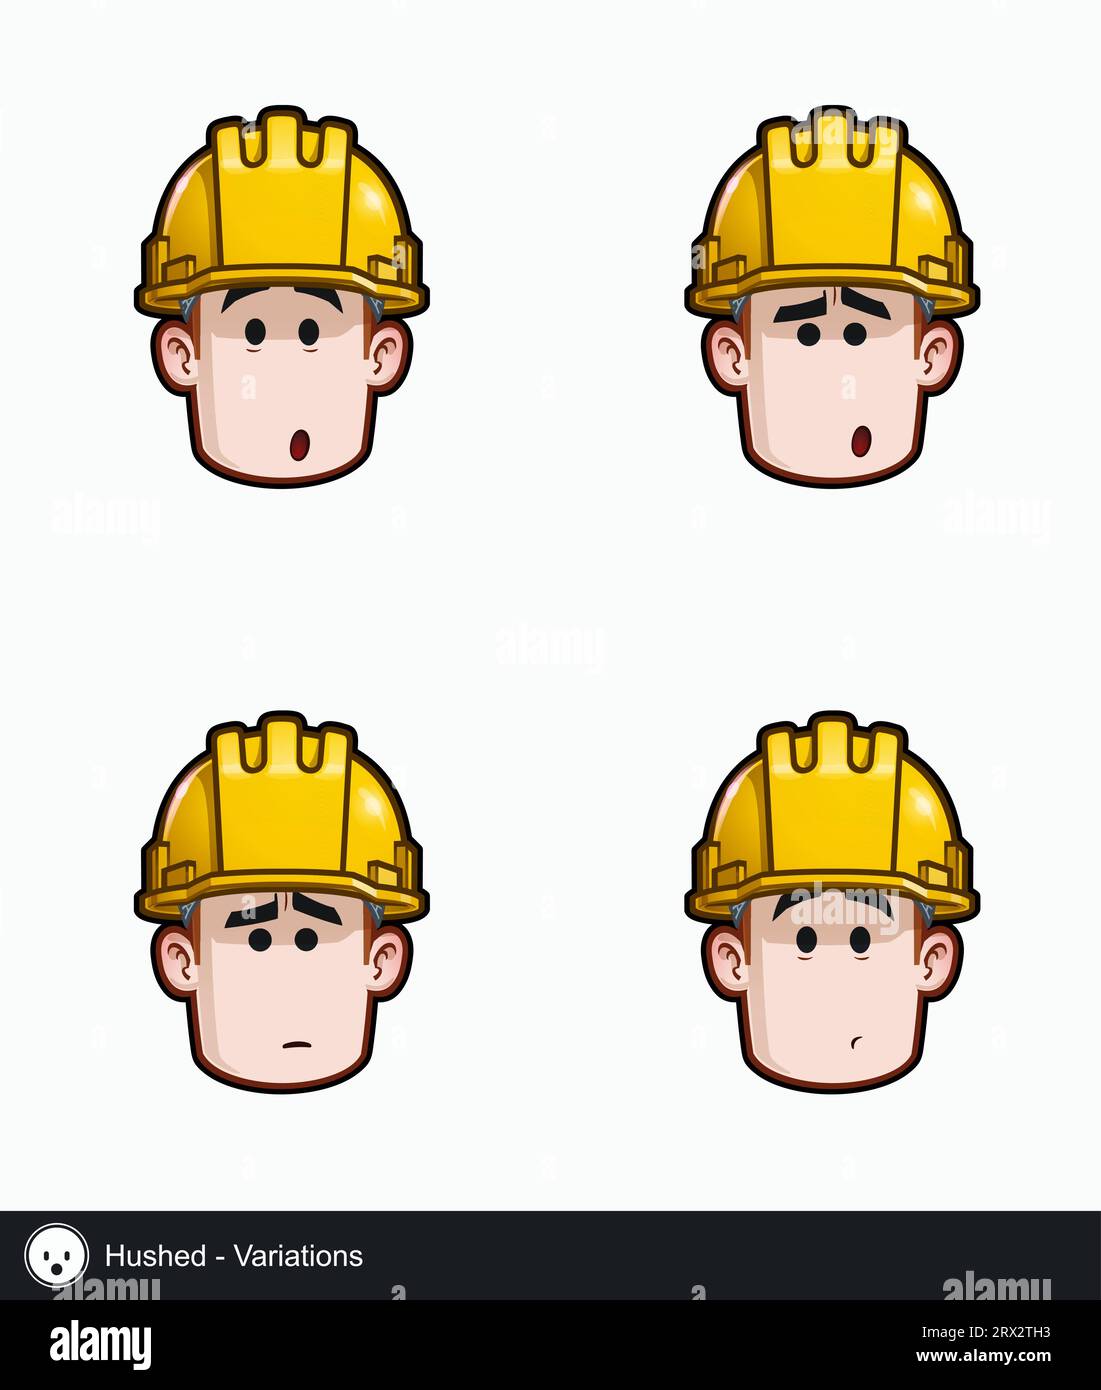 Symbolset eines Bauarbeiters mit verdeckten emotionalen Ausdrucksvarianten. Alle Elemente sind auf gut beschriebenen Ebenen und Gruppen übersichtlich. Stock Vektor